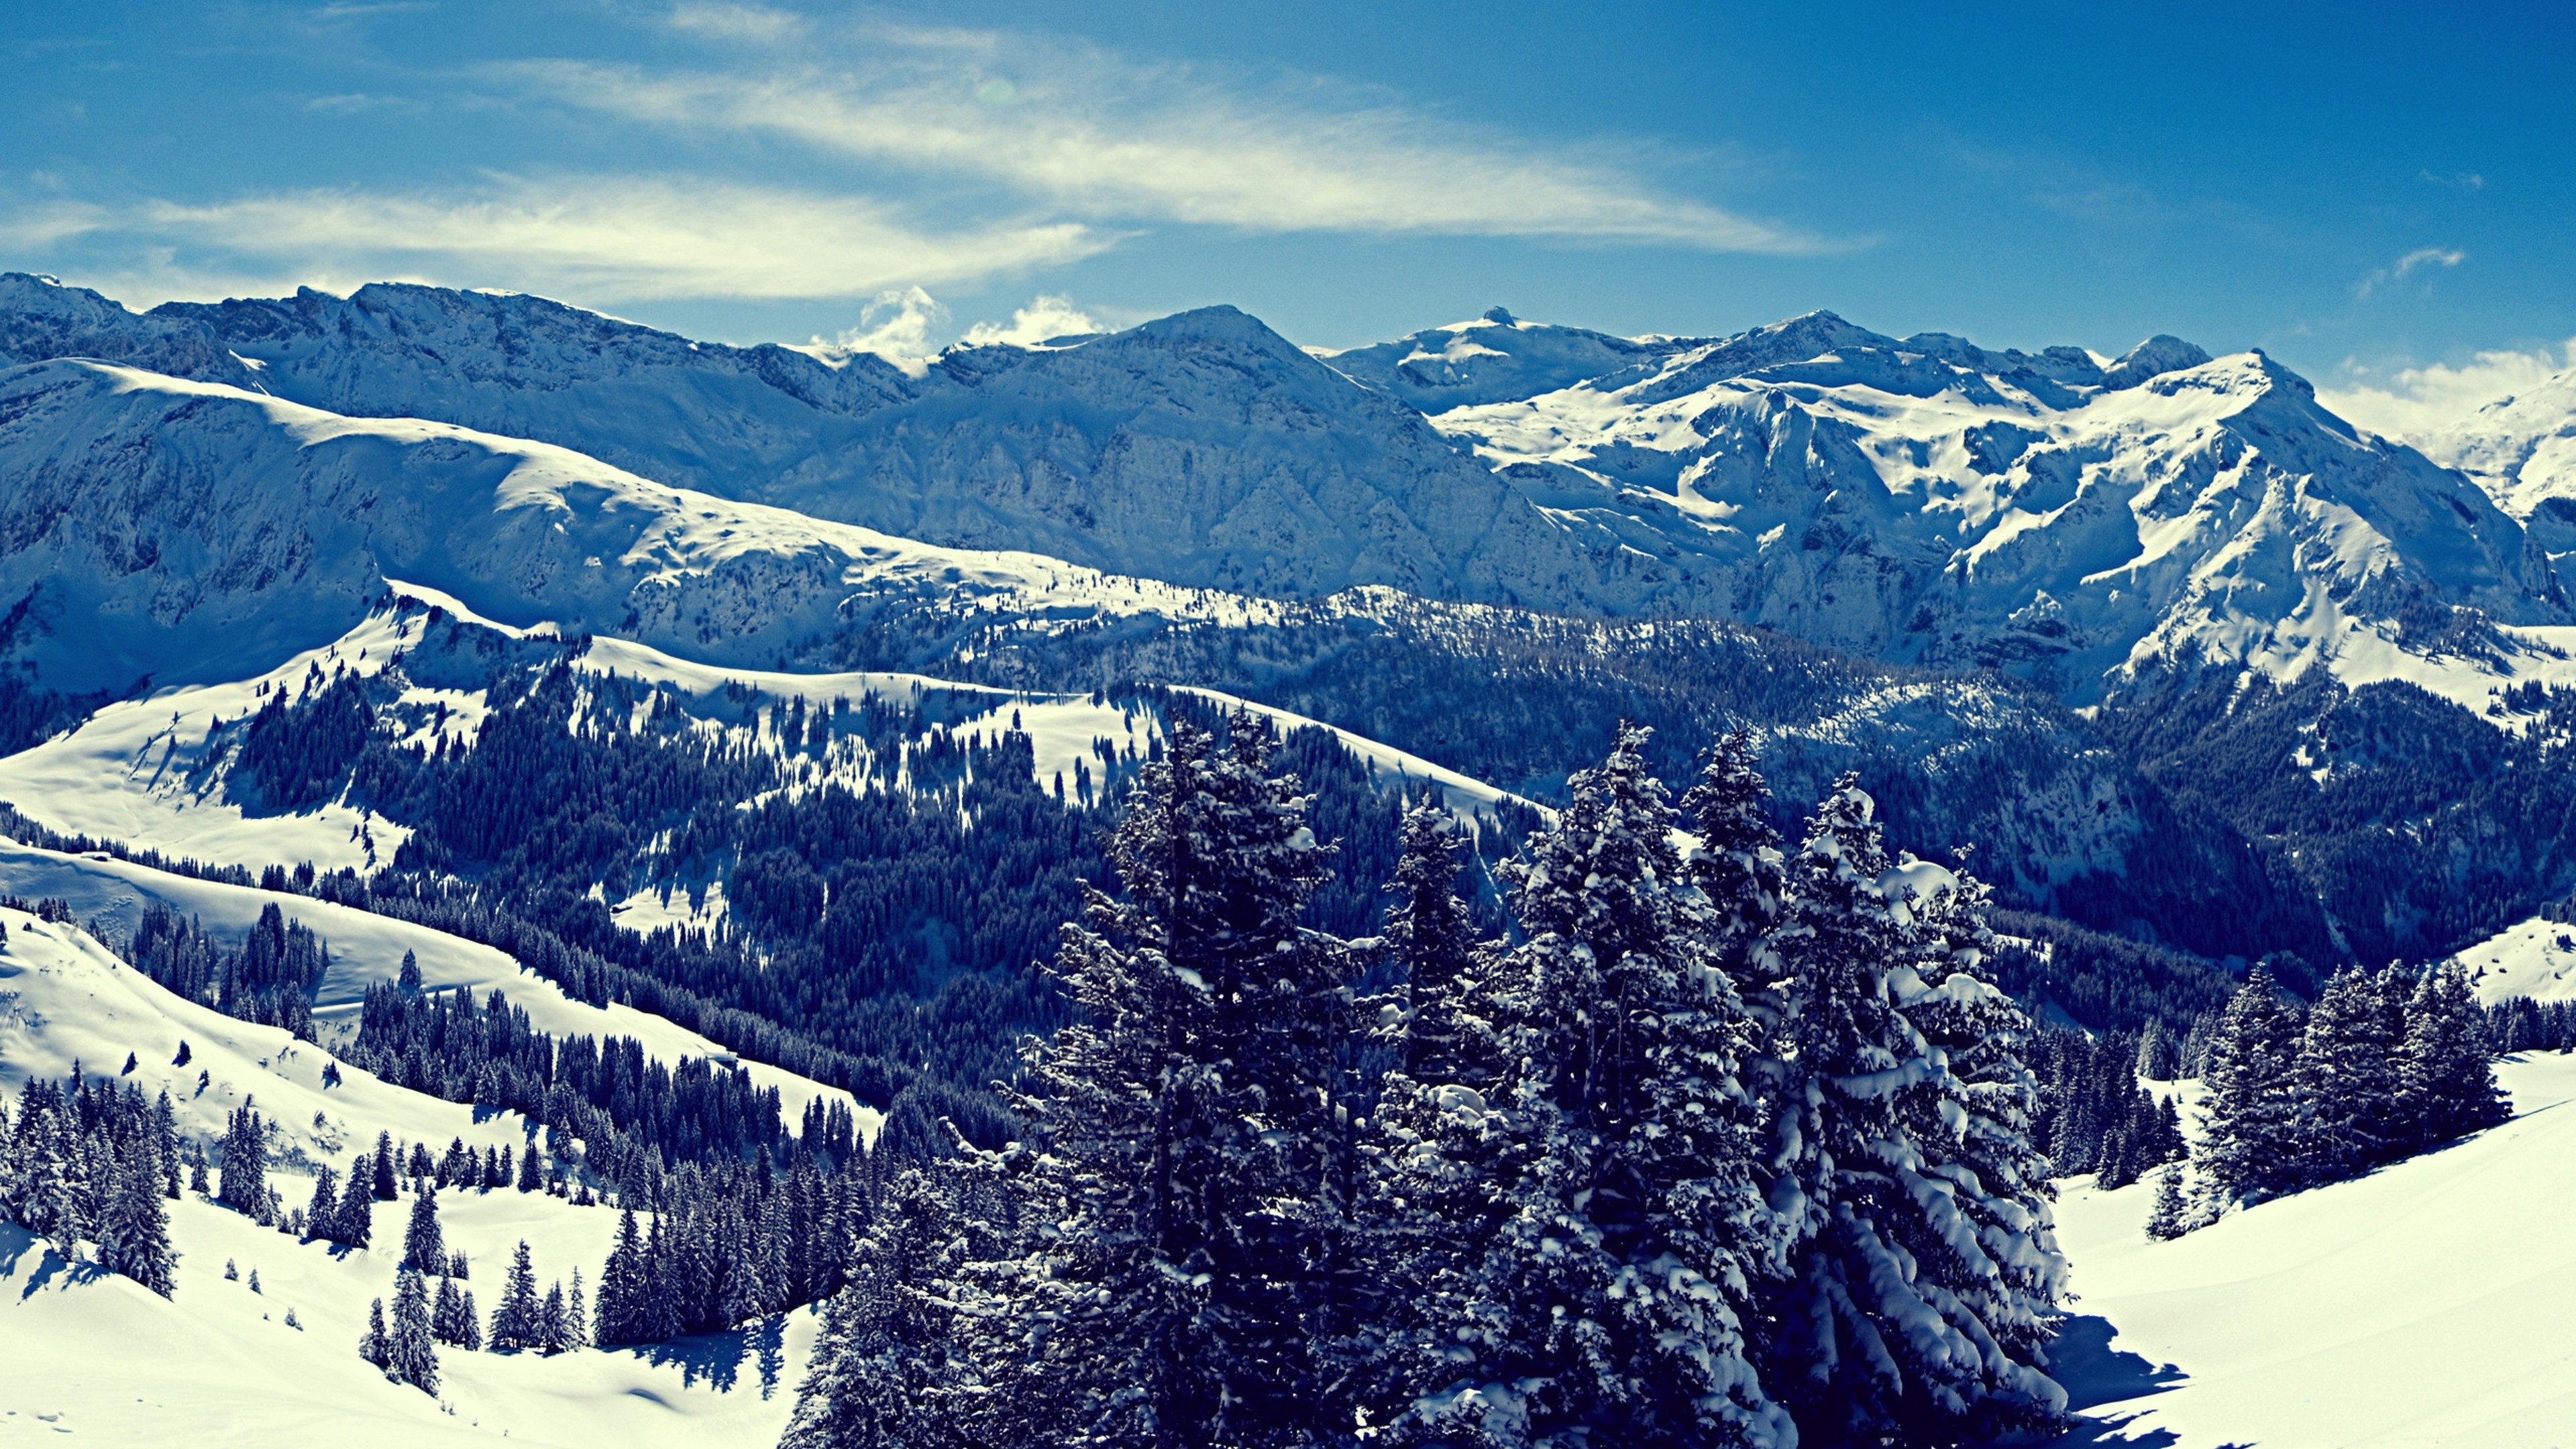 Winter Snow Landscape Mountain Forest 4K Ultra HD Desktop Wallpaper